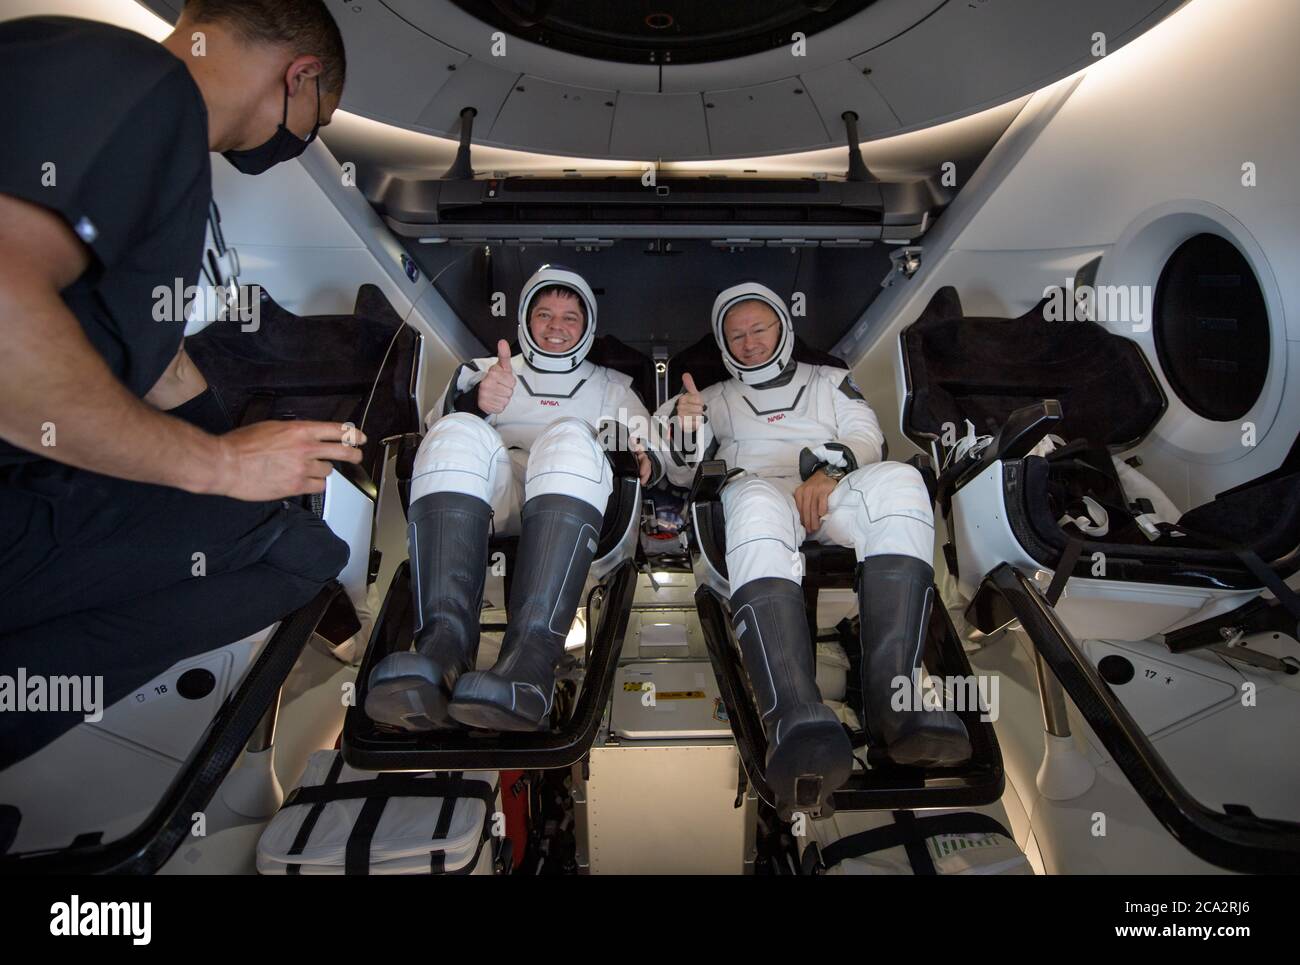 GOLF VON MEXIKO, USA - 02. August 2020 - die Raumsonde SpaceX Crew Dragon Endeavour mit den NASA-Astronauten Robert Behnken und Douglas Hurley o Stockfoto